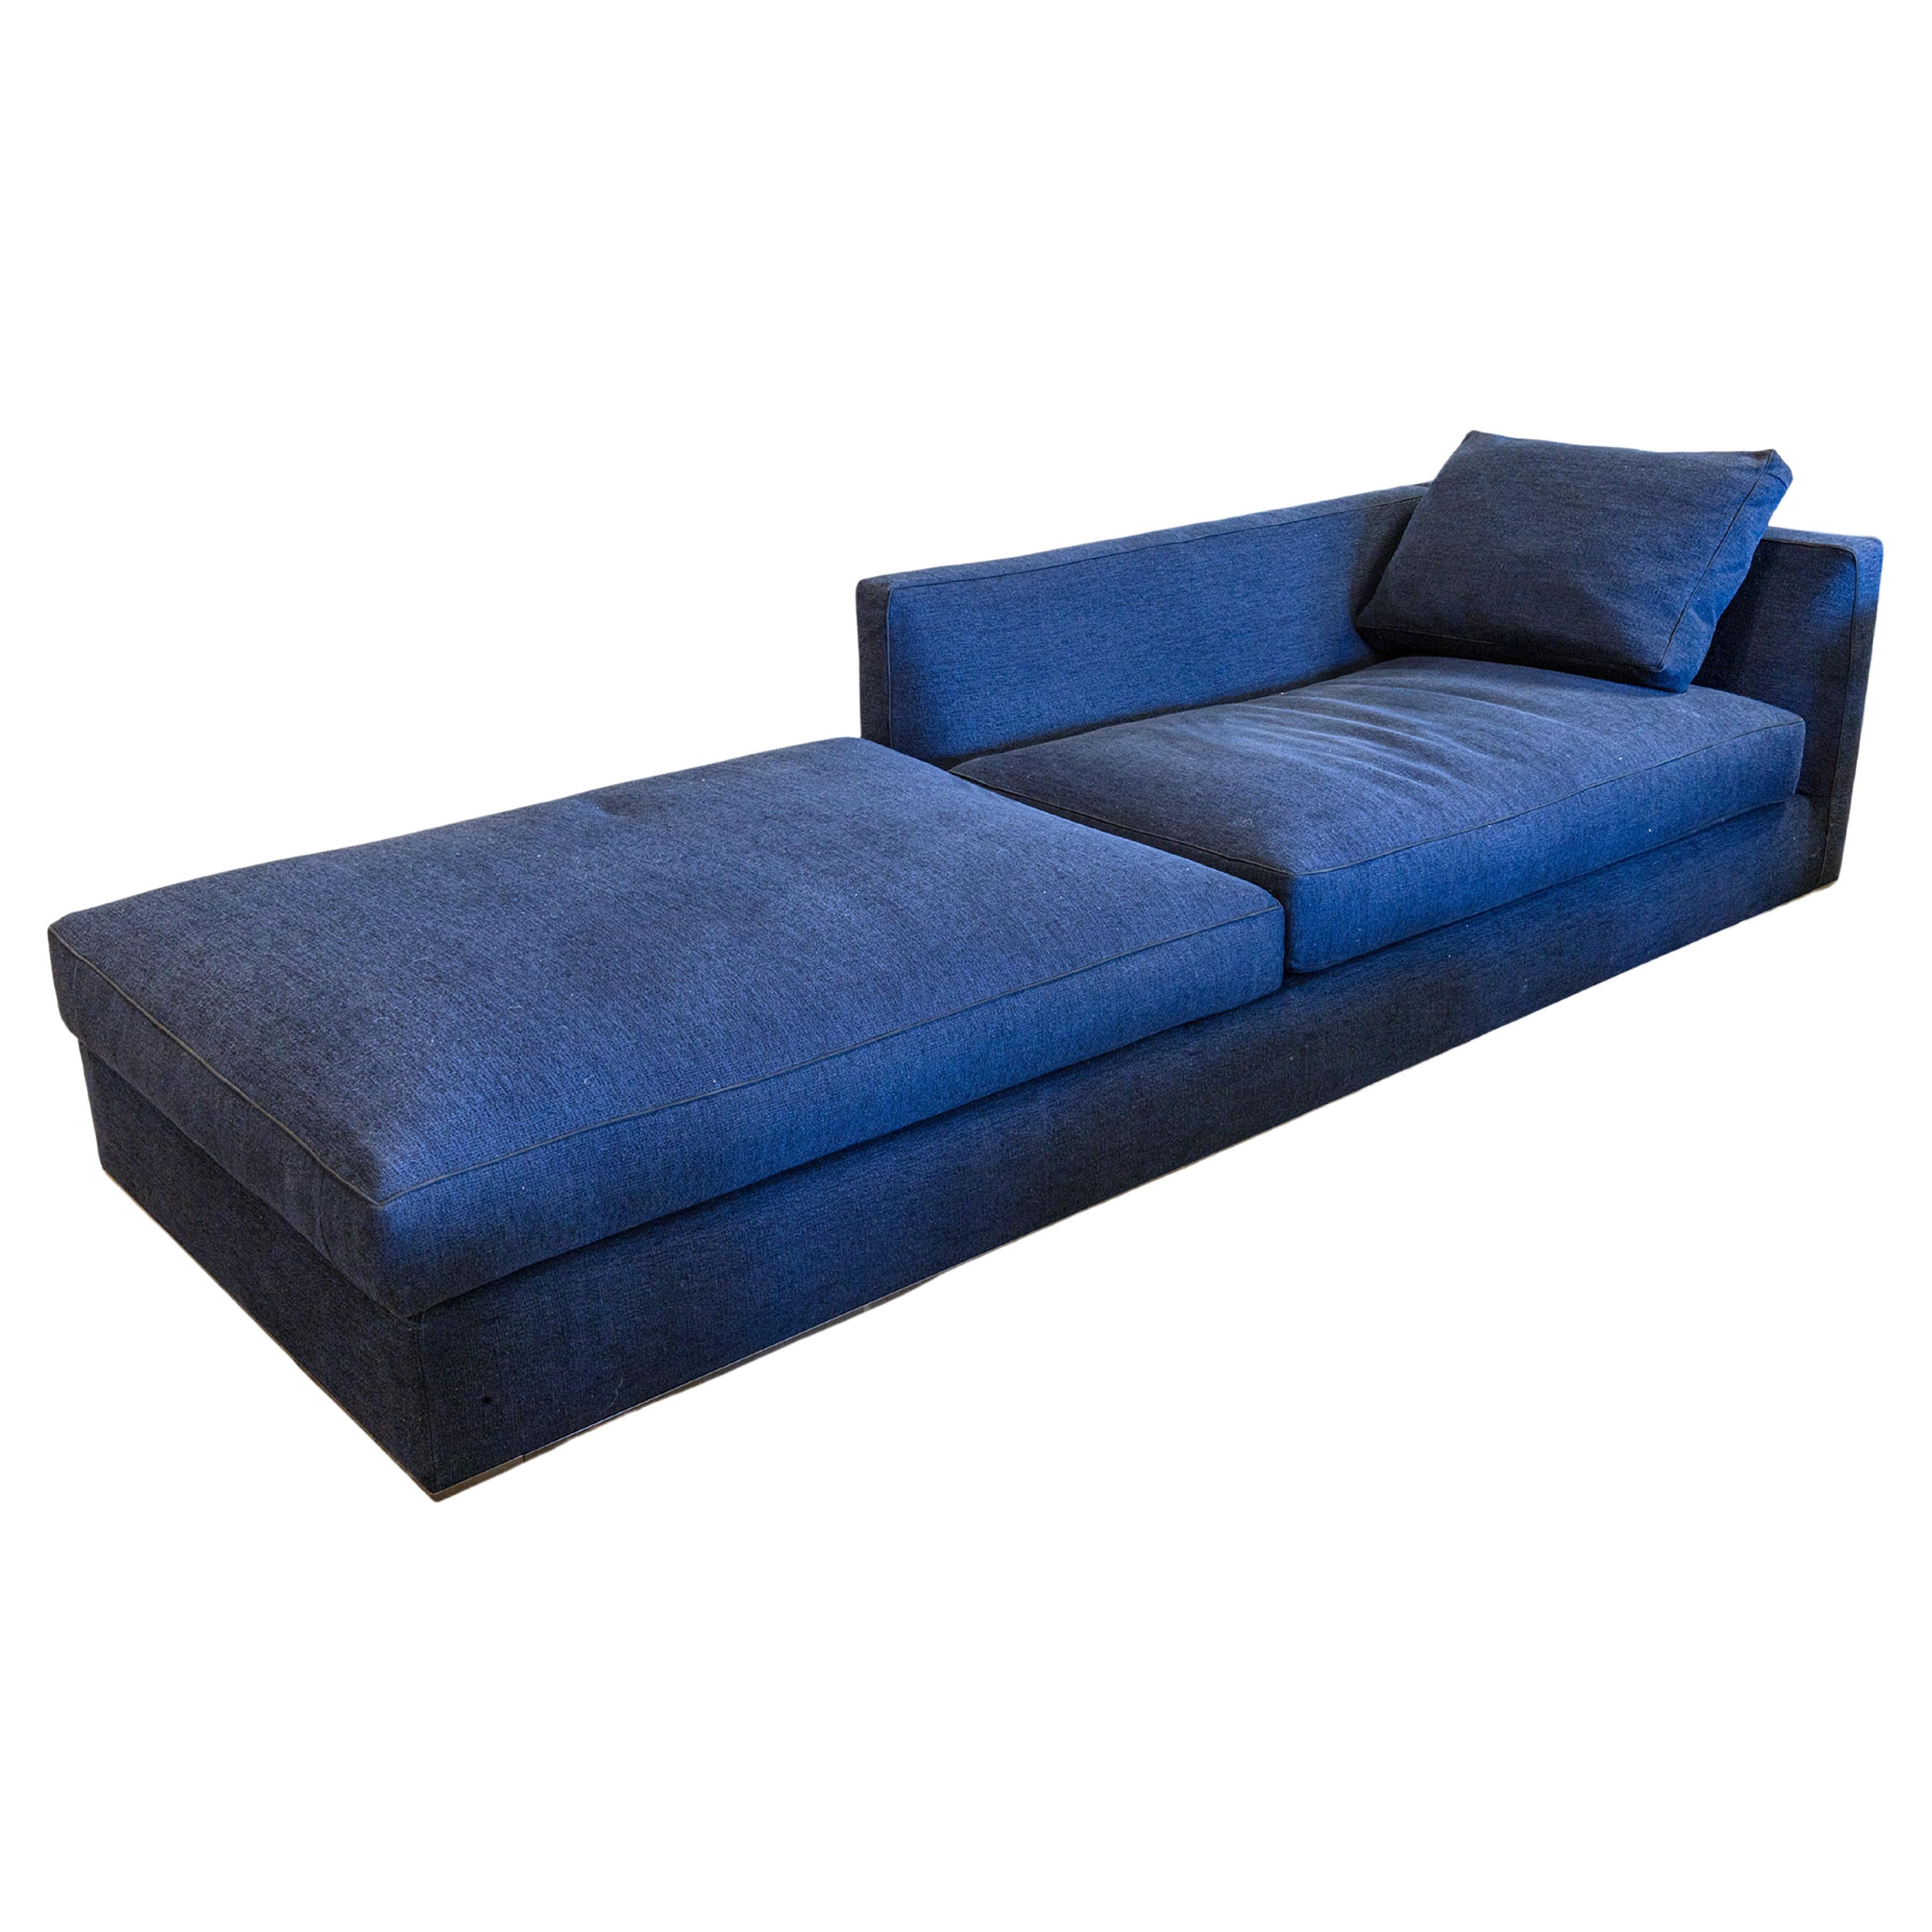 B & B Italia Antonio Citterio Richard Chaise Lounge Sofa in Blue Grade S Fabric For Sale